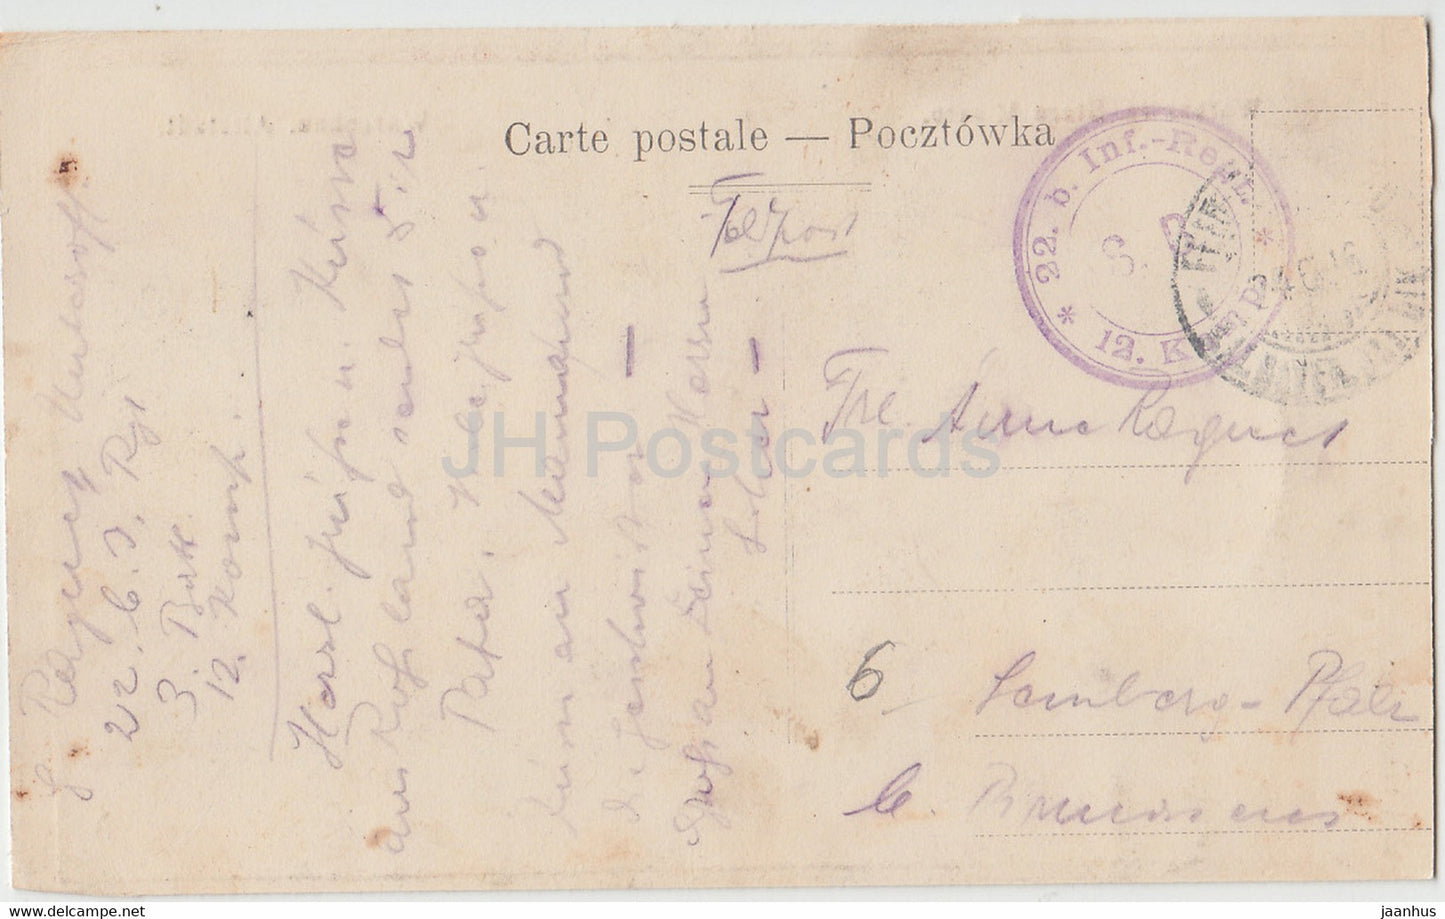 Warszawa - Stare Miasto - Warschau Altstadt - Feldpost - old postcard - 1916 - Poland - used